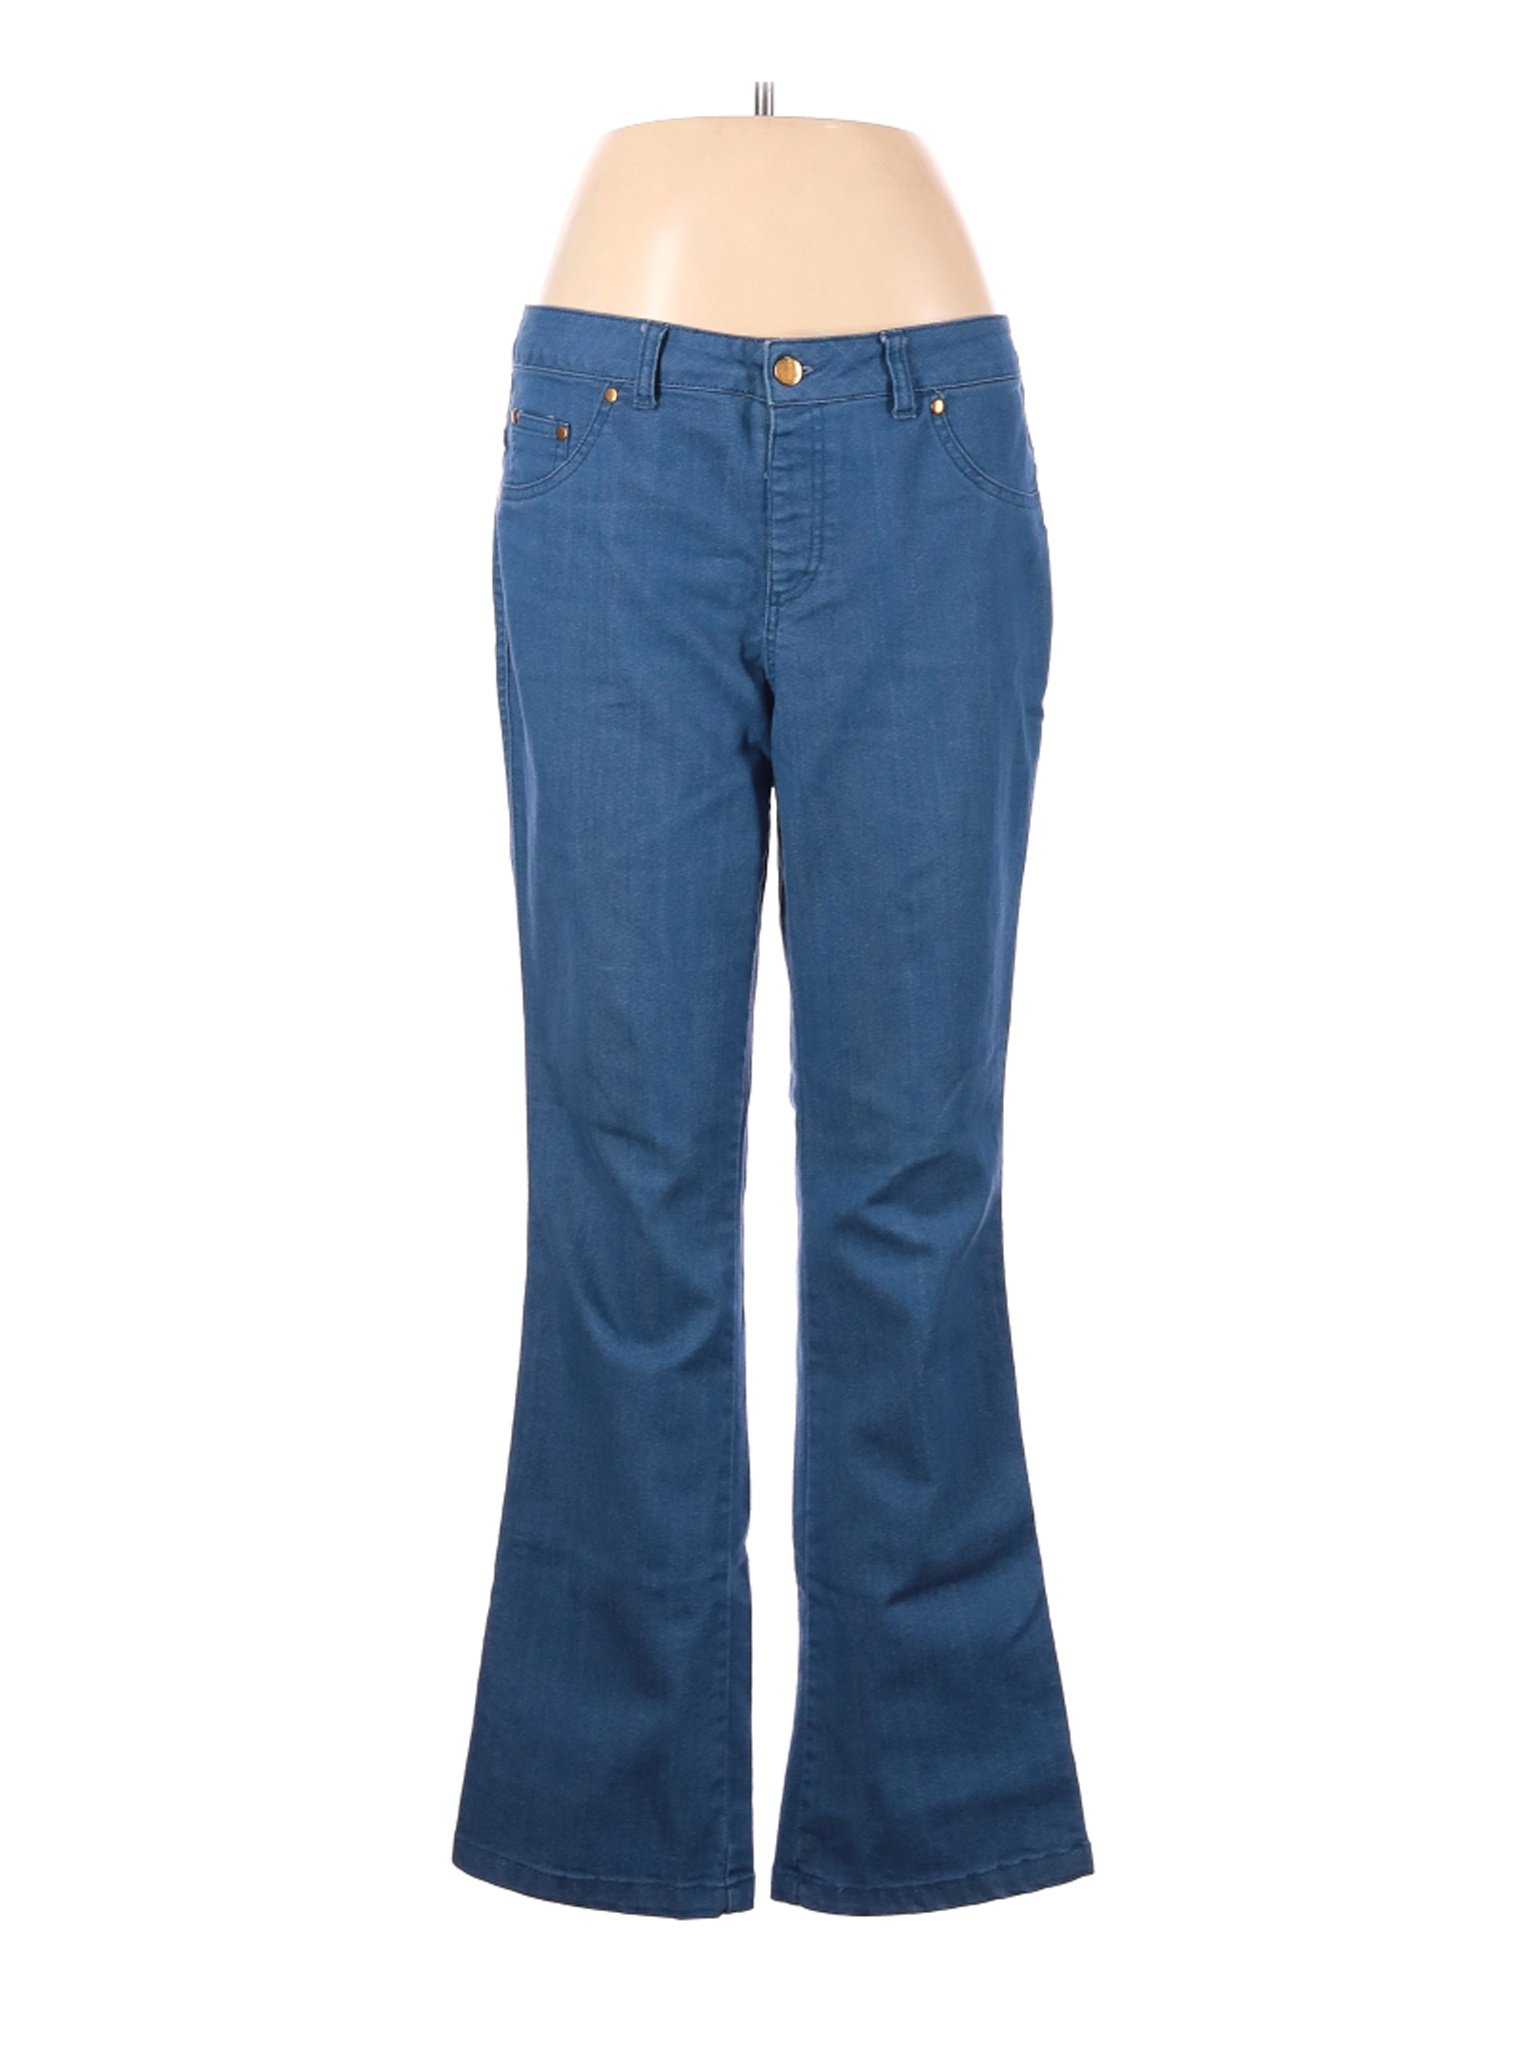 IMAN Women Blue Jeans M | eBay